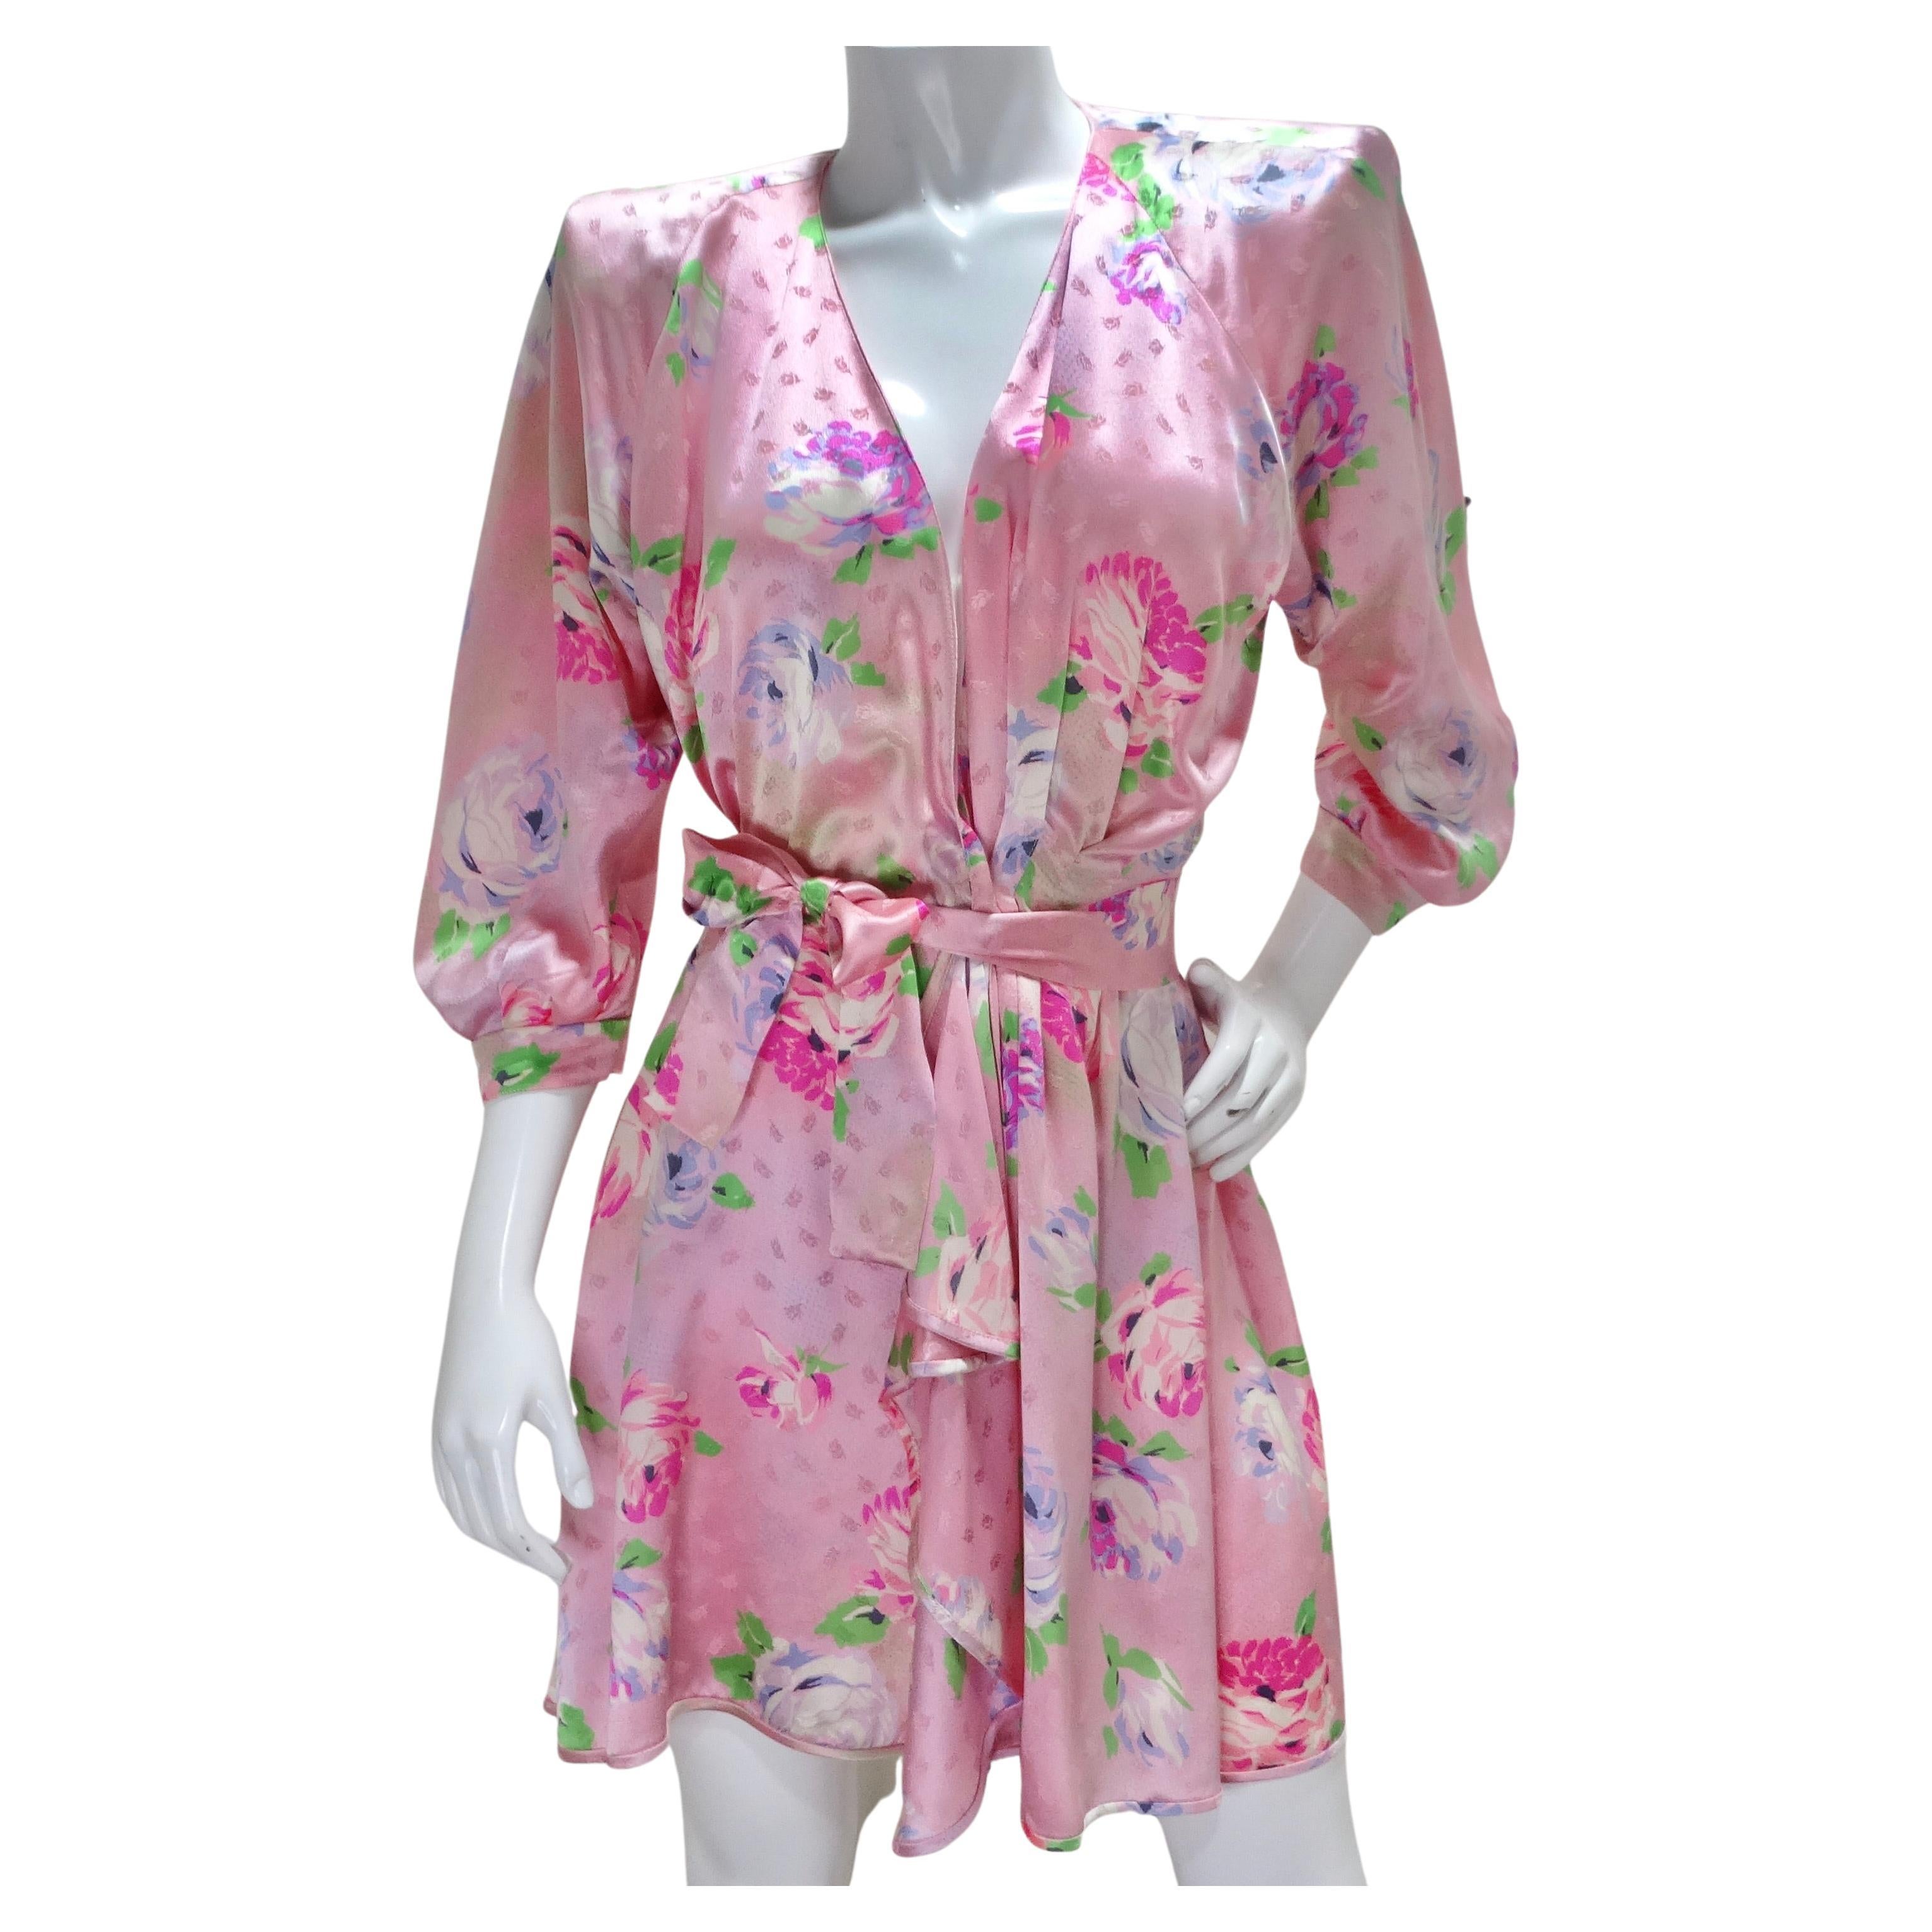 Emanuel Ungaro 1980s Pink Floral Wrap Dress For Sale